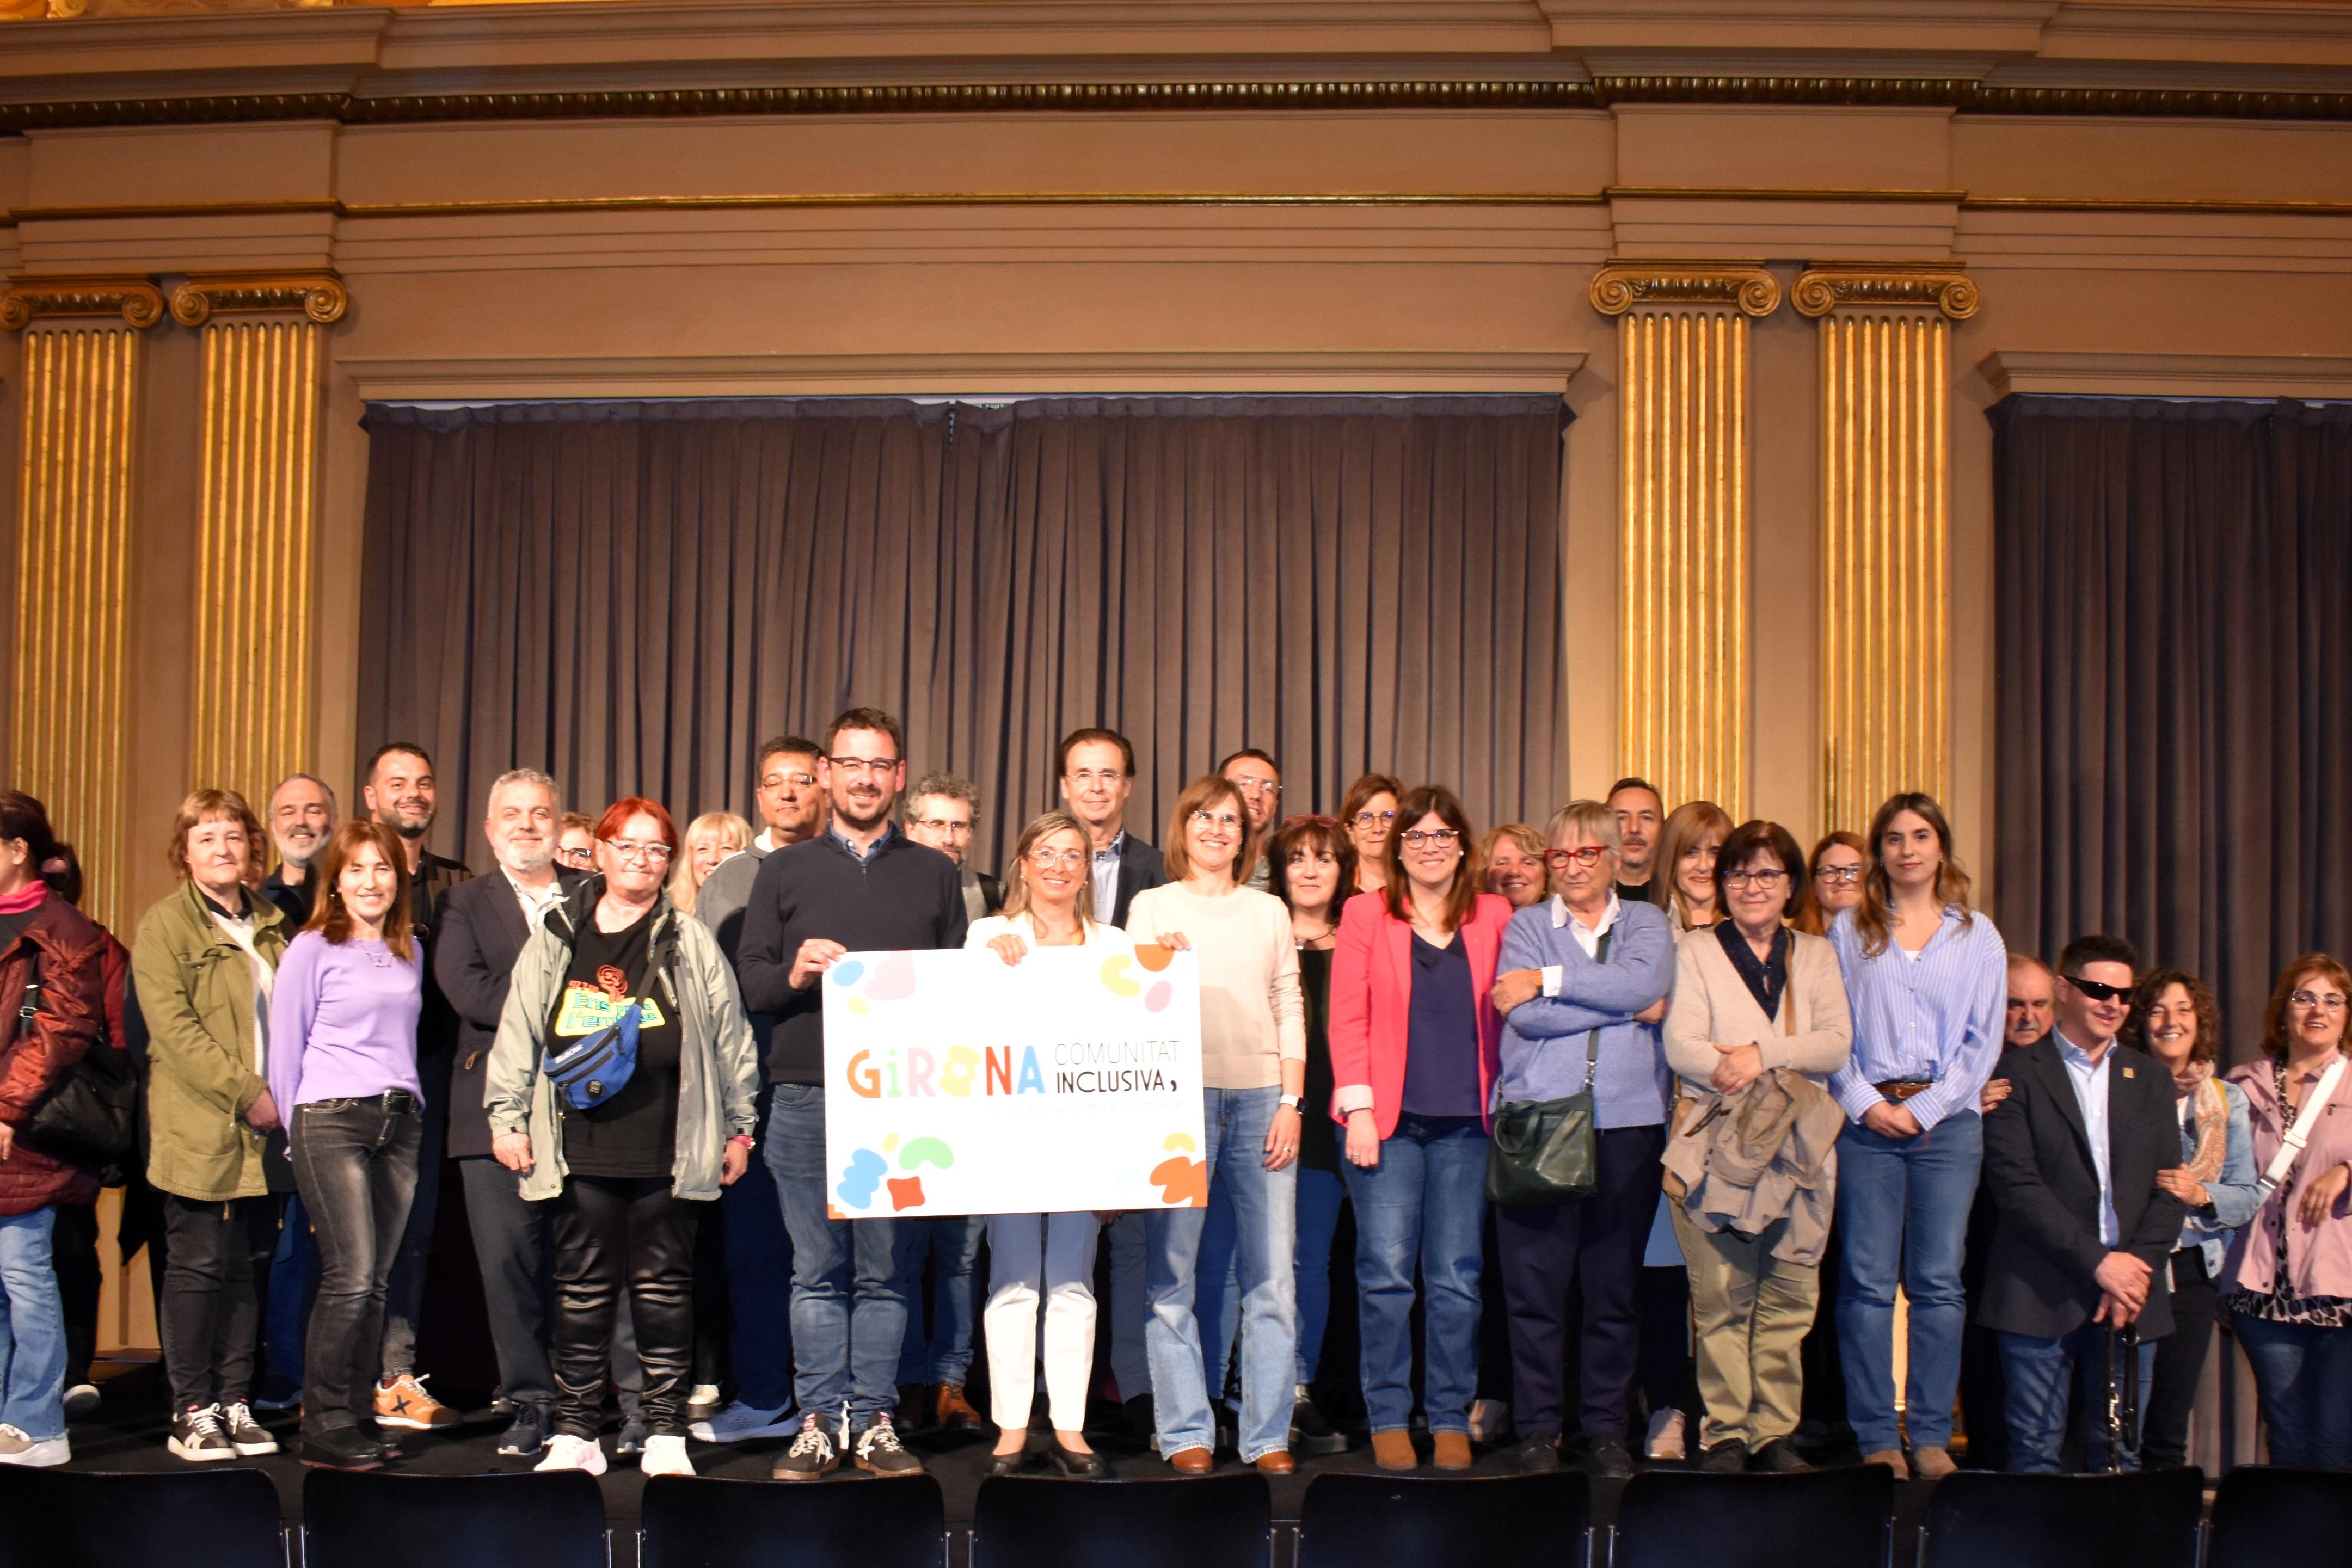 Representants de l'Espai Girona Comunitat Inclusiva, amb l'alcalde de Girona i regidors, mostrant la marca "Girona Ciutat inclusiva"